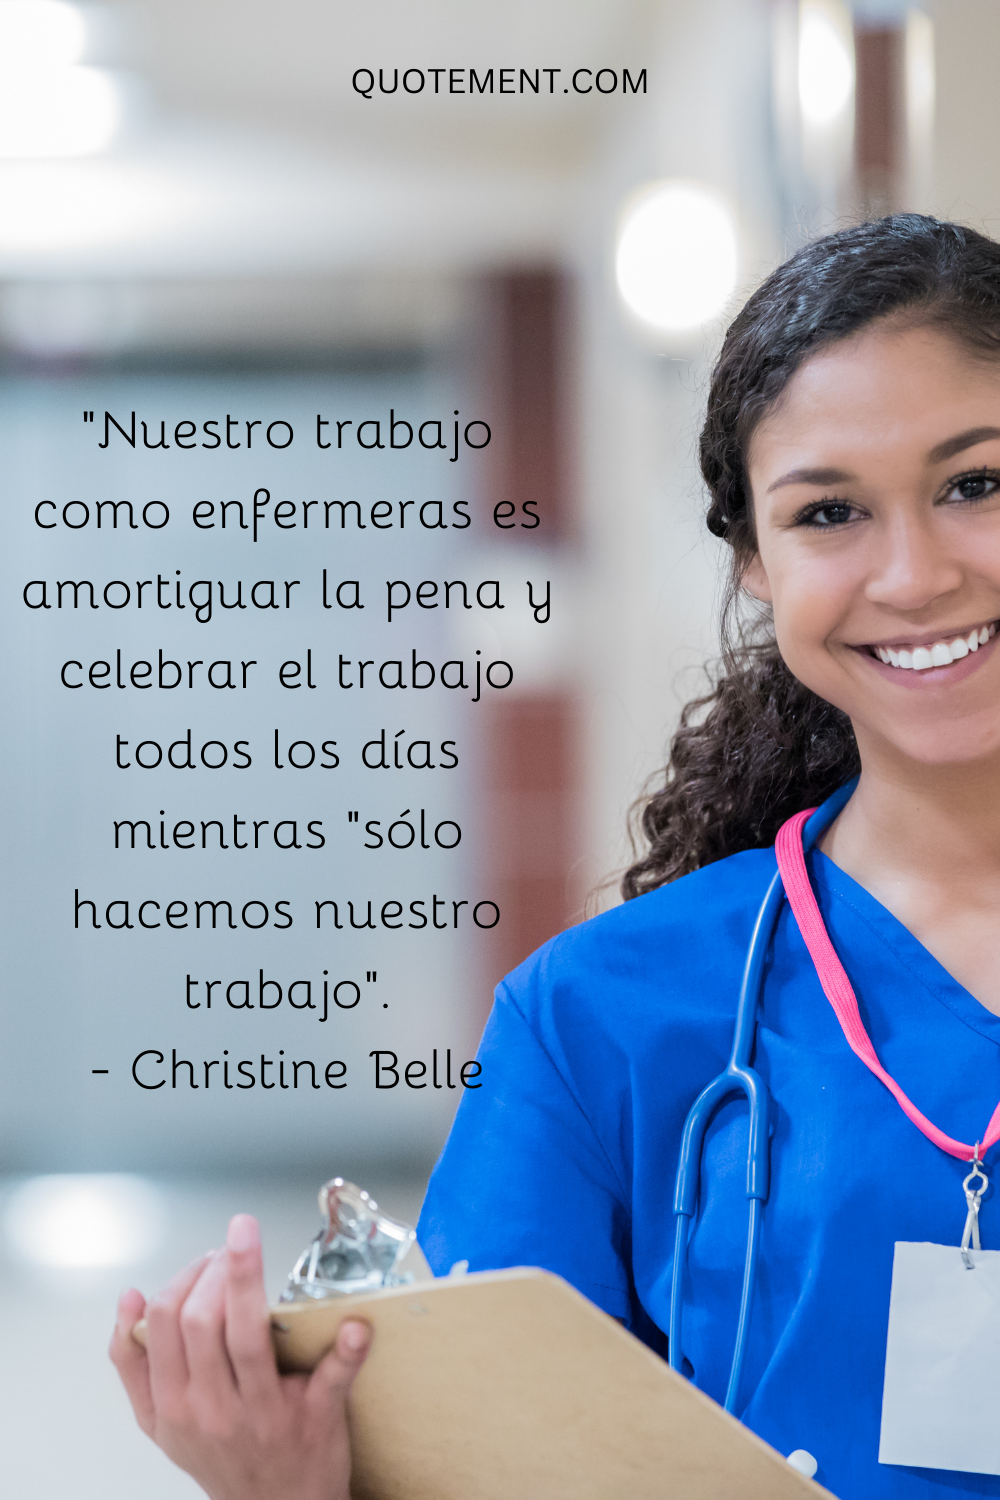 "Nuestro trabajo como enfermeras es amortiguar la pena y celebrar el trabajo cada día mientras "sólo hacemos nuestro trabajo". - Christine Belle